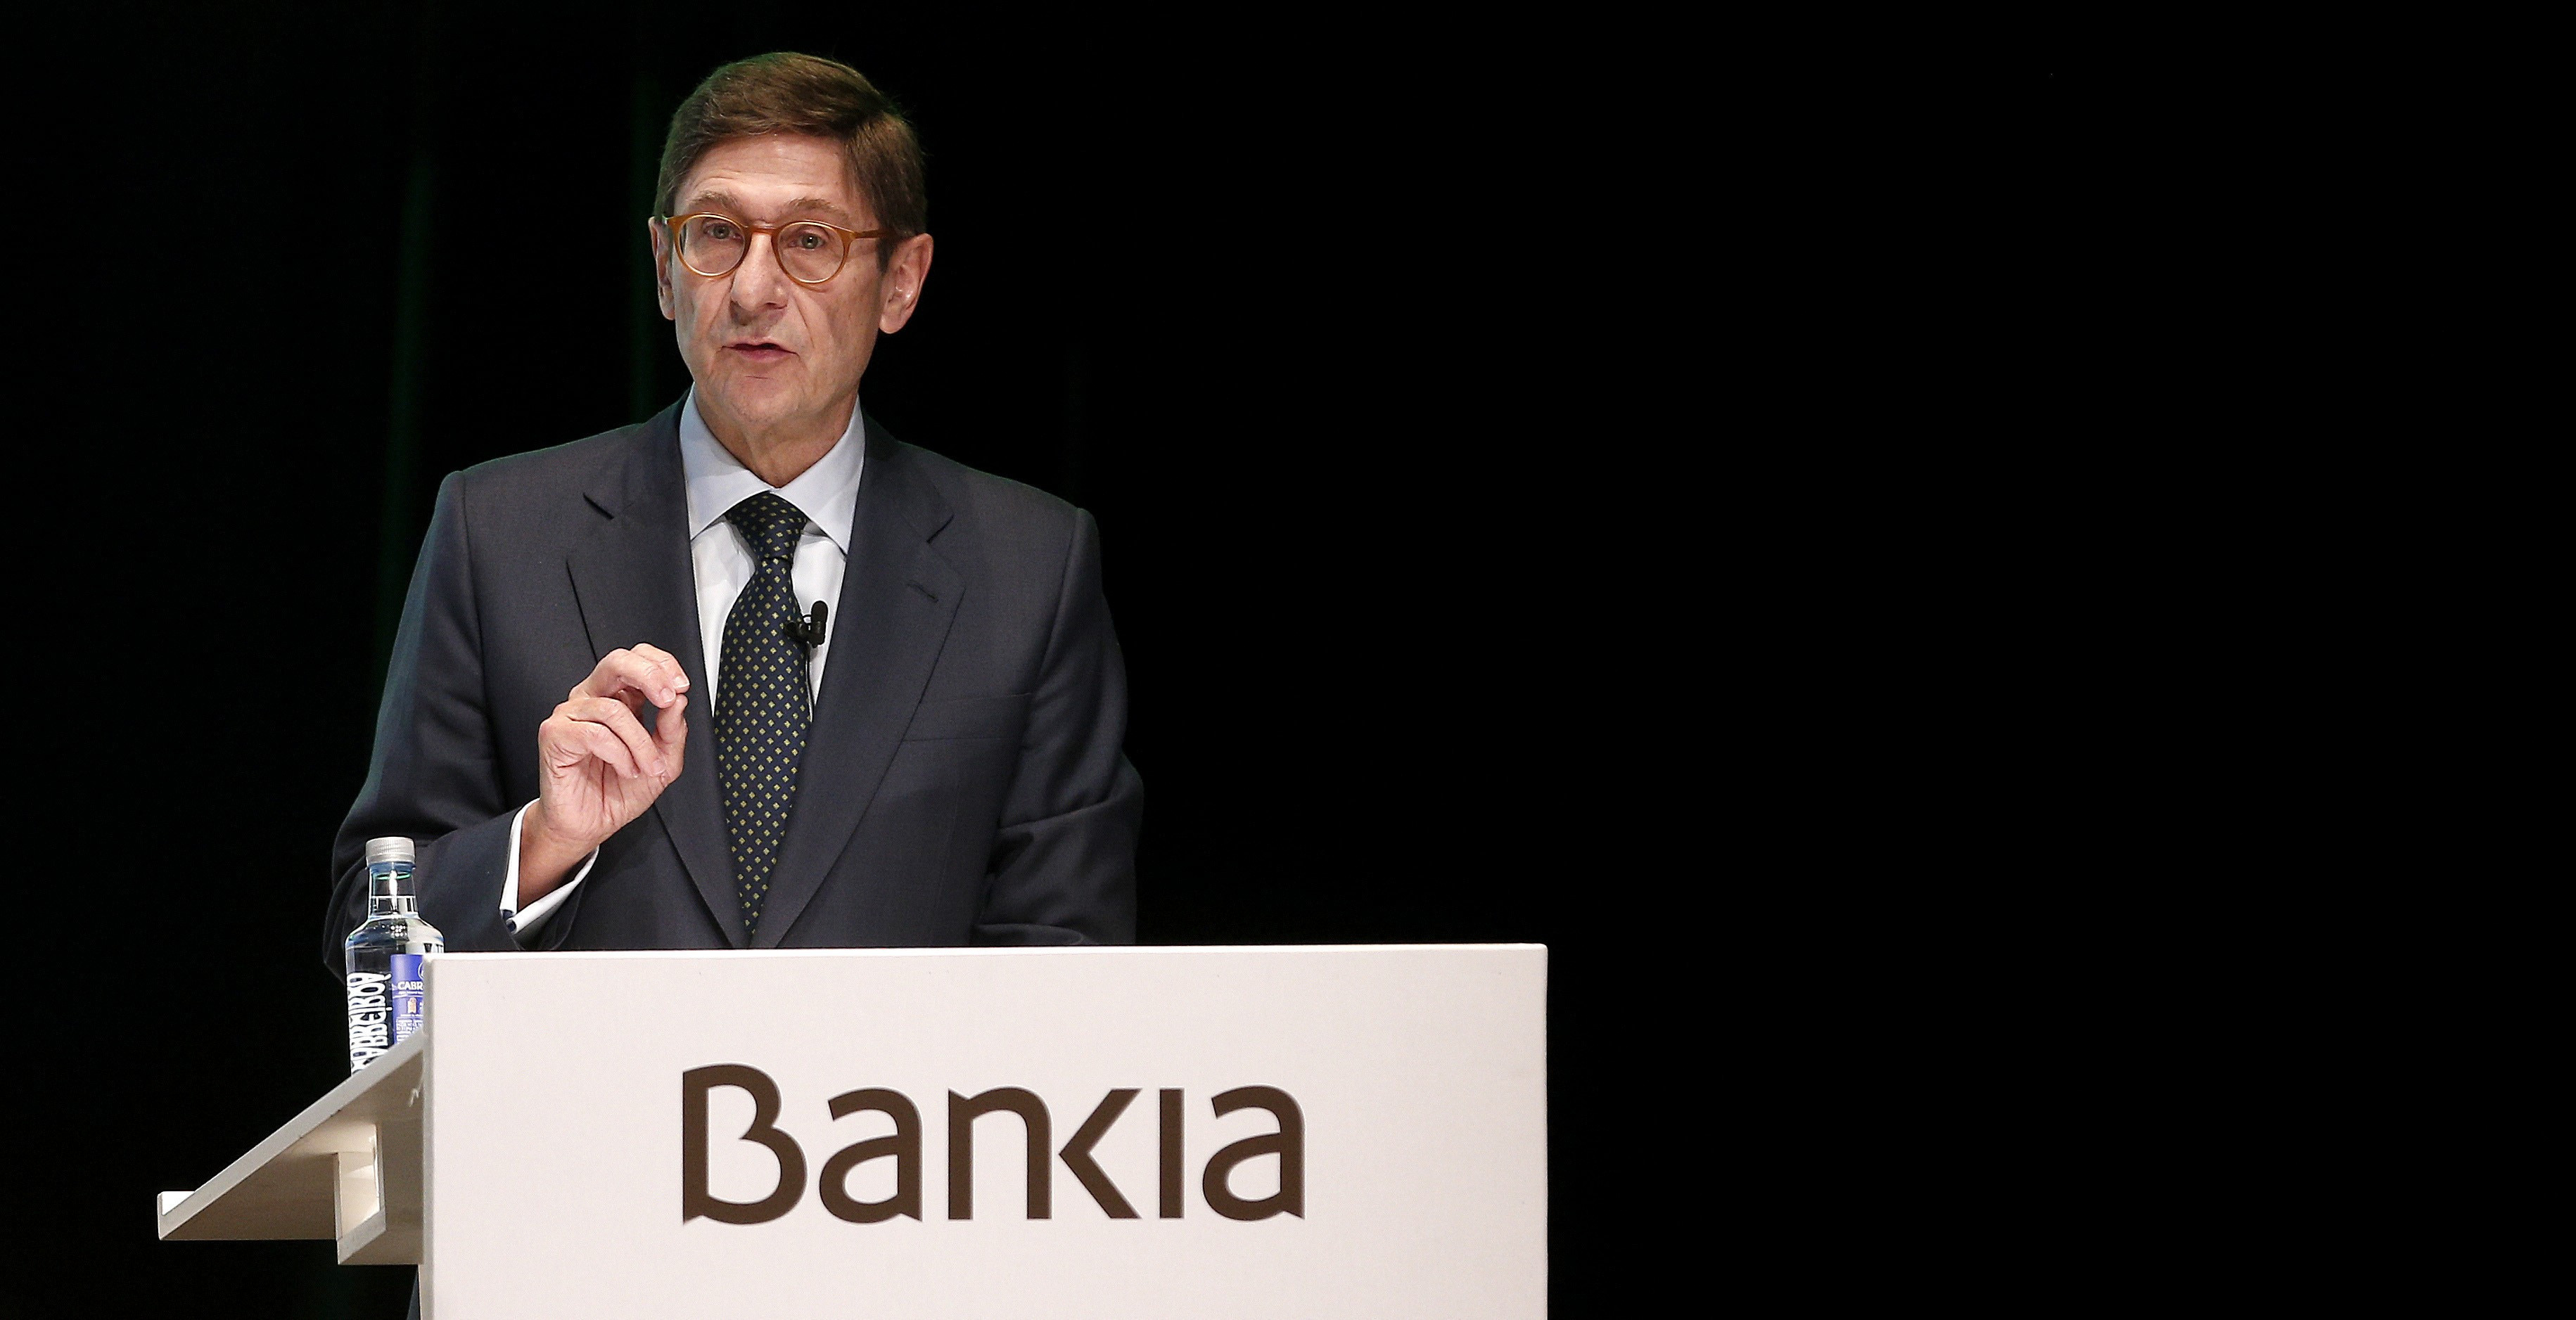 El presidente de Bankia, José Ignacio Goirigolzarri, durante su intervención en una Junta General de Accionistas de Bankia